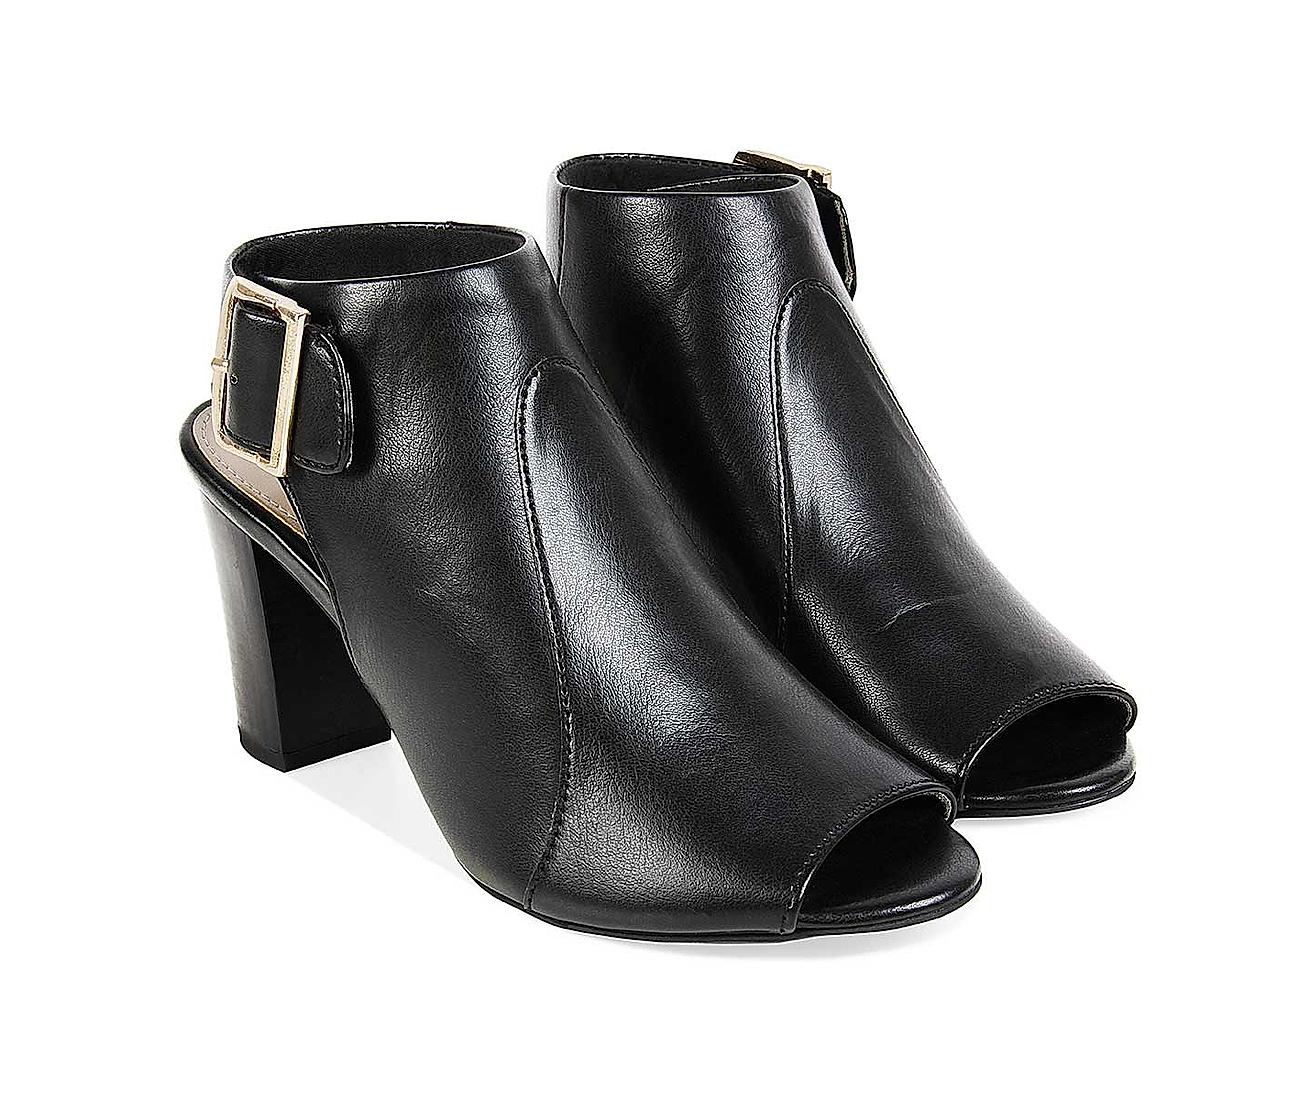 Women's brand new high heel sandals for sale - महिला - 1749786231